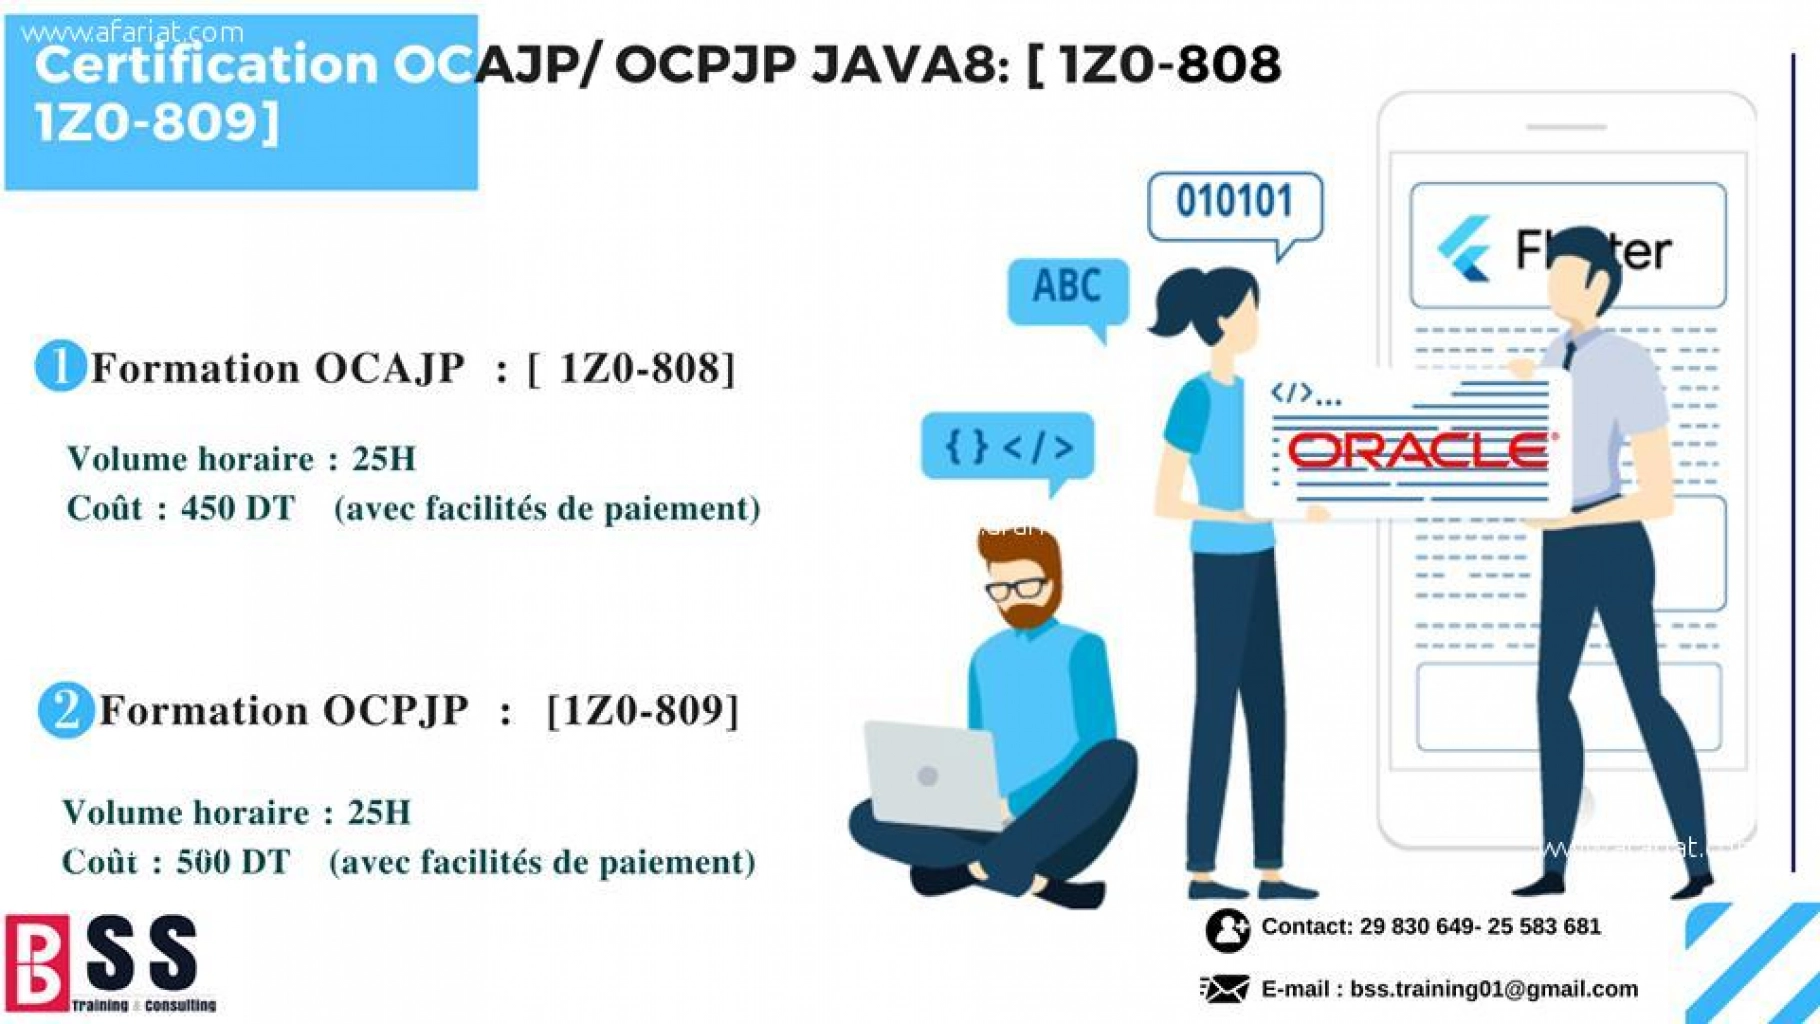 Certification OCAJP / OCPJP JAVA8: [ 1Z0-808, 1Z0-809]